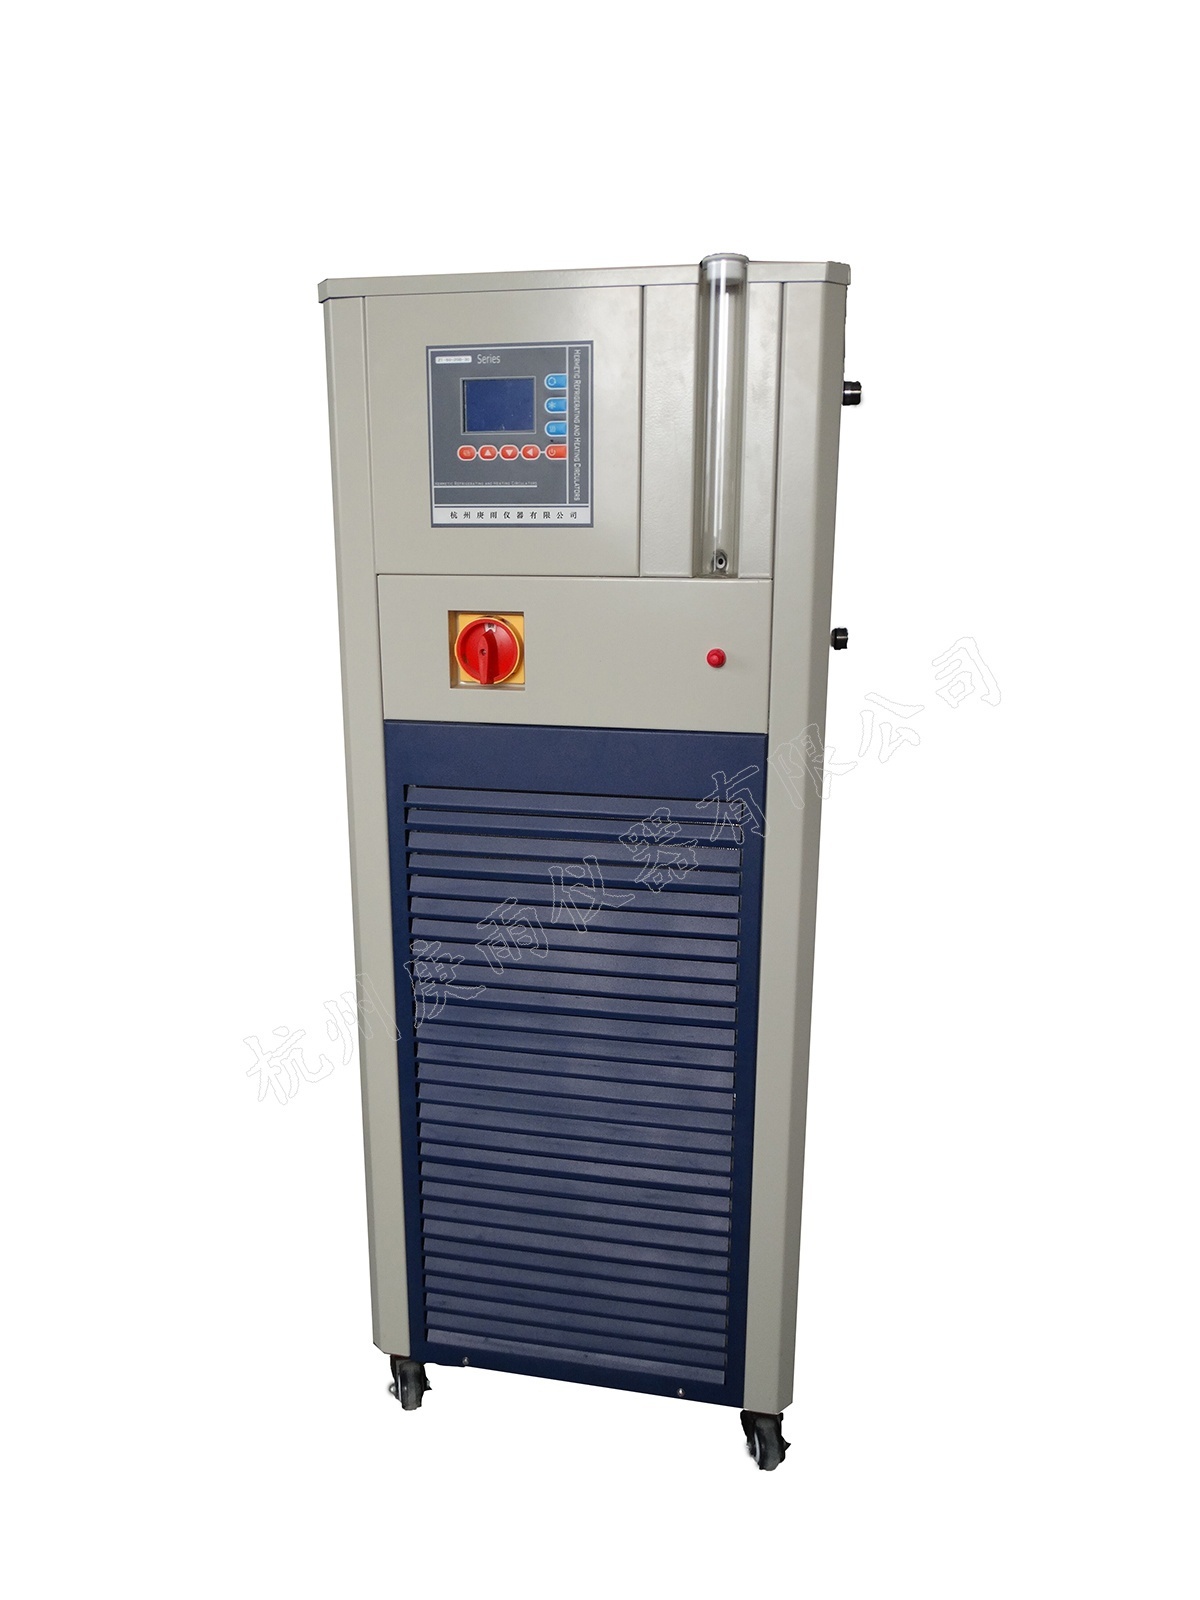 GDZT-100-200-80G高低温循环装置的图片